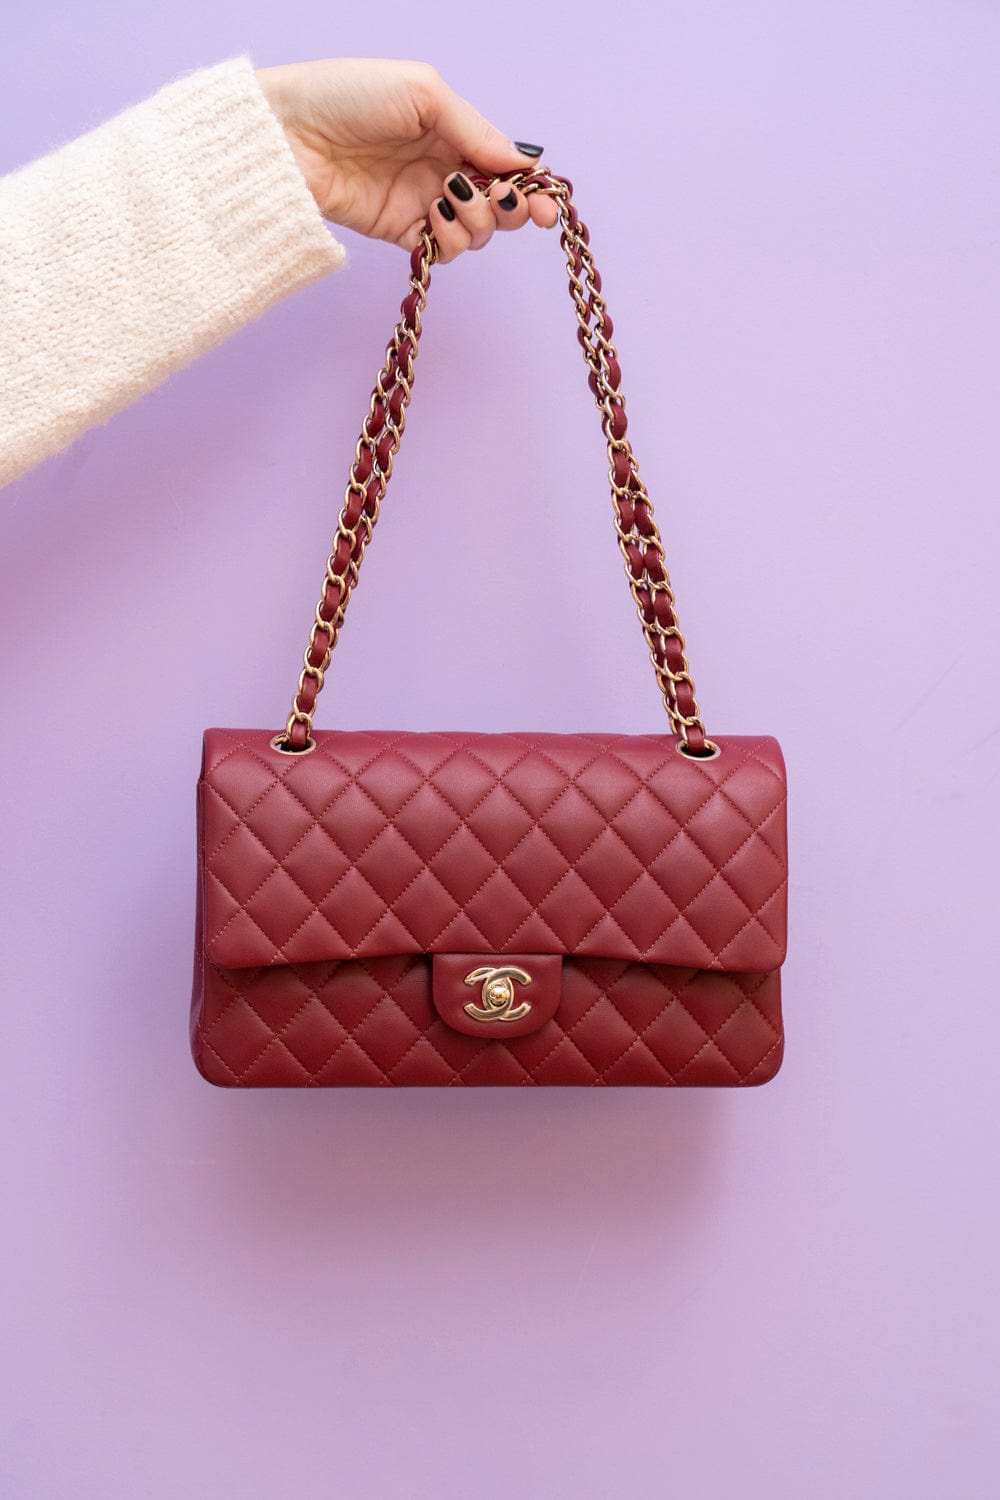 Chanel Chanel Red Lambskin Leather Medium Flap Bag GHW  - AGL1779